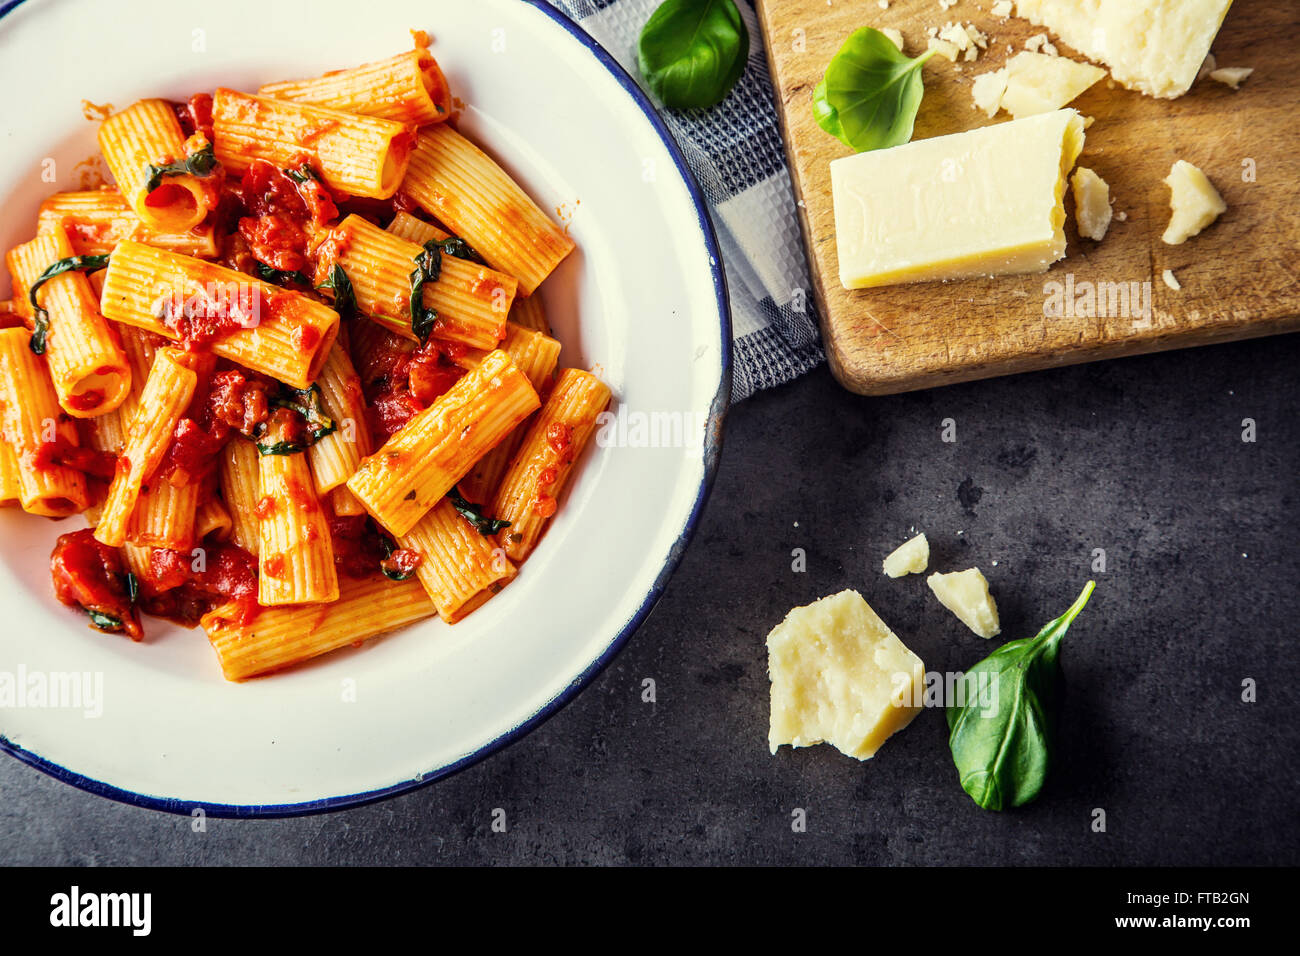 La pasta. Cucina italiana e mediterranea. Pasta Rigatoni con salsa di pomodoro foglie di basilico e aglio formaggio parmigiano. Una vecchia casa Foto Stock